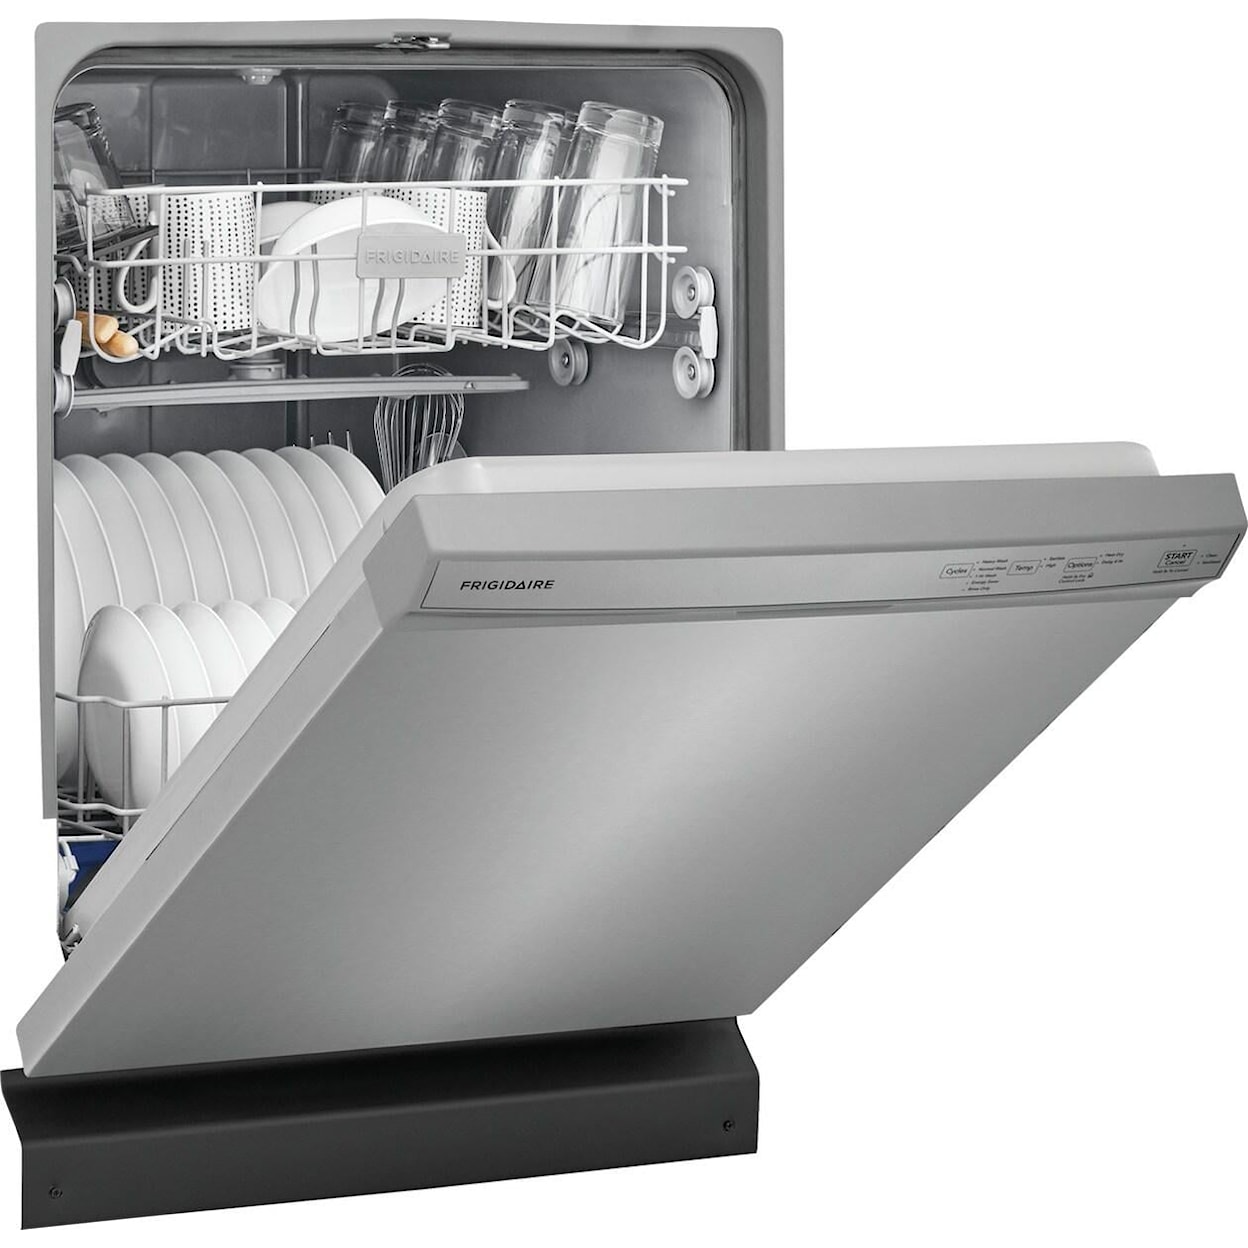 Frigidaire Dishwashers Built In Dishwasher